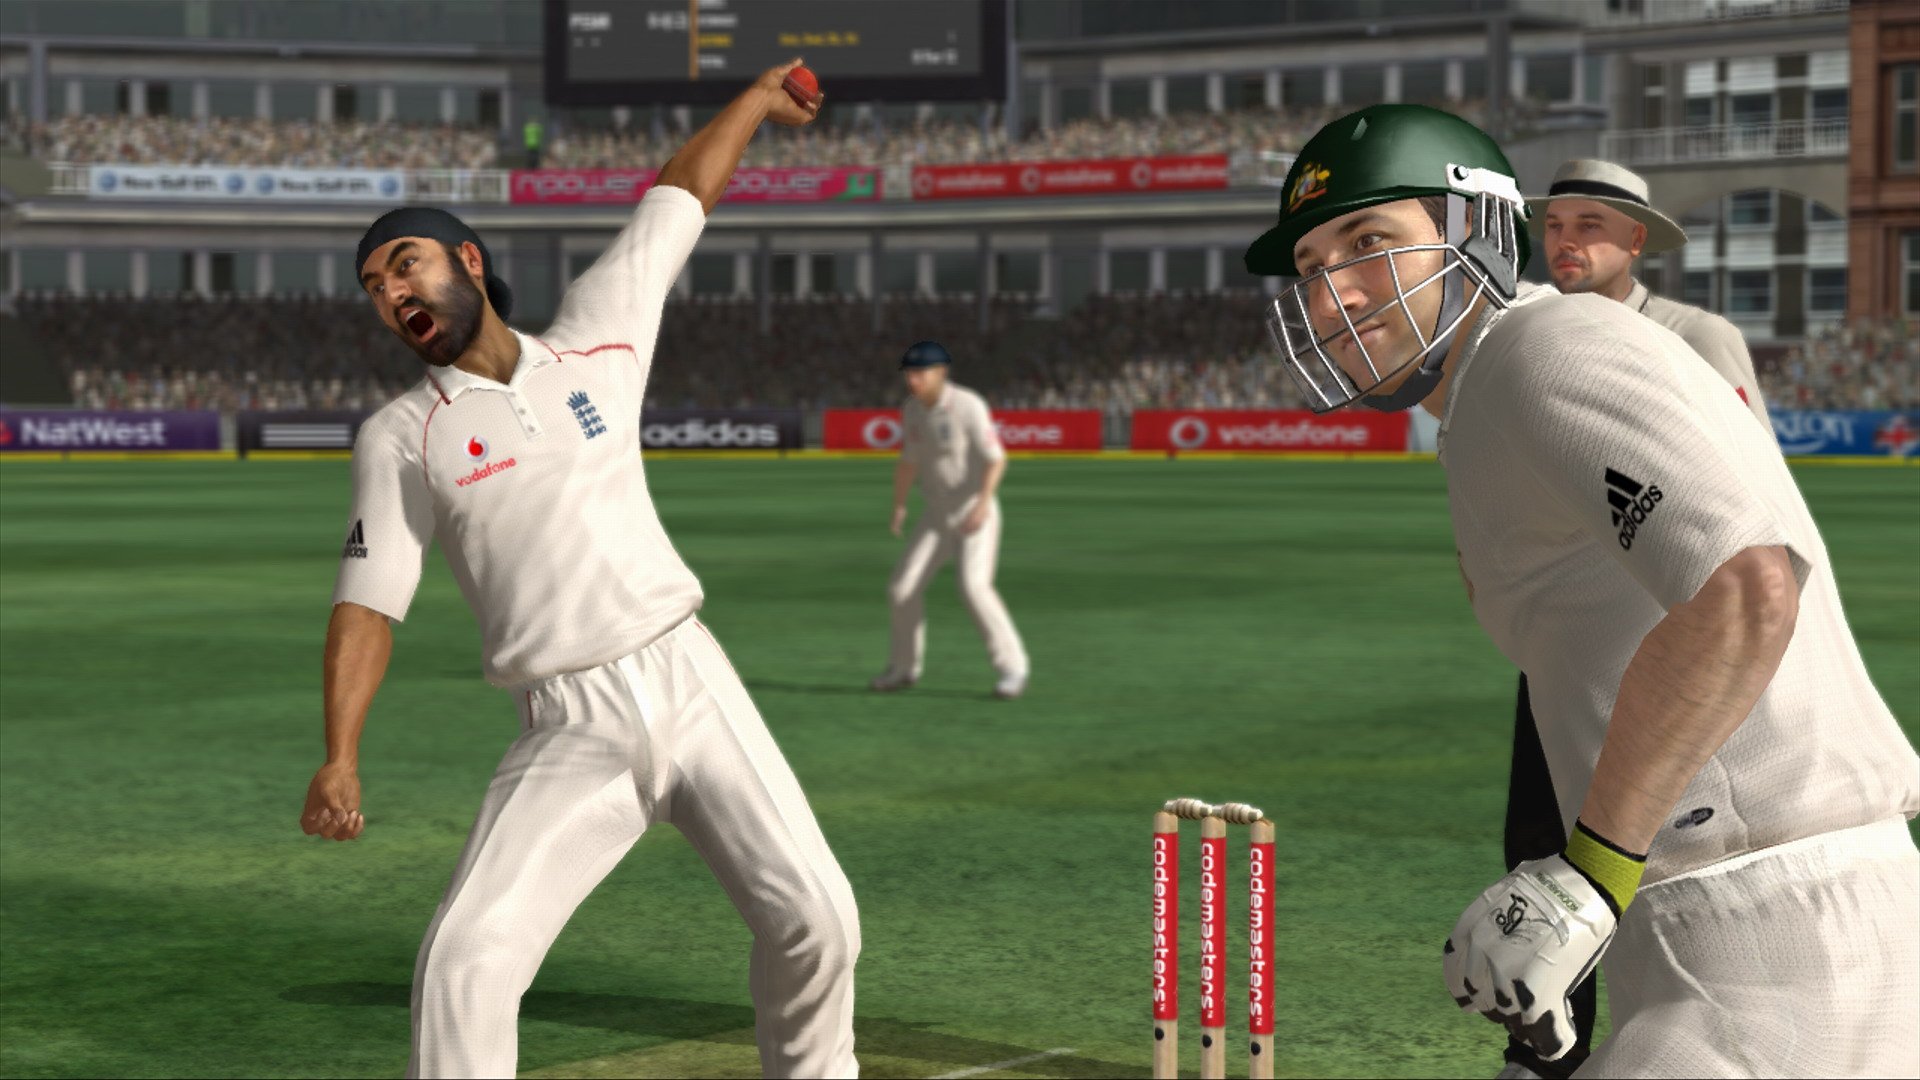 Ashes Cricket 2009: скриншоты из игры - Игромания.